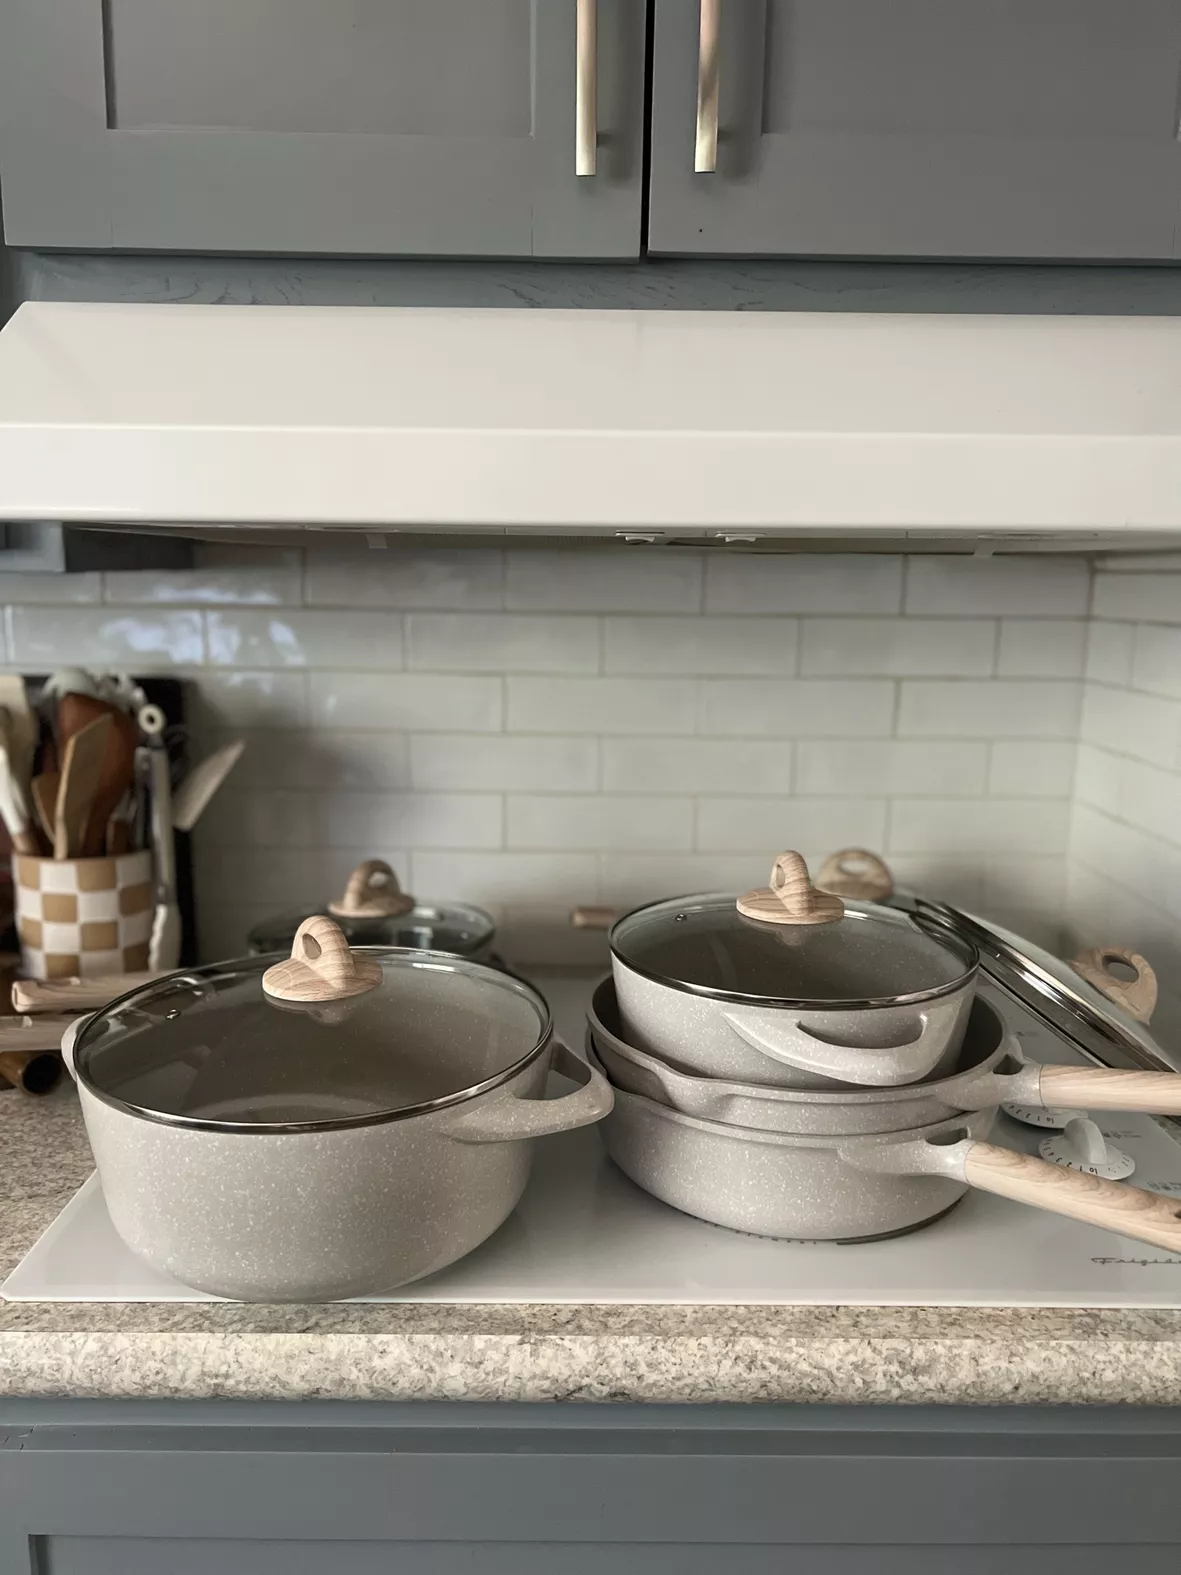  CAROTE 16pcs Pots and Pans Set, Nonstick Cookware Sets